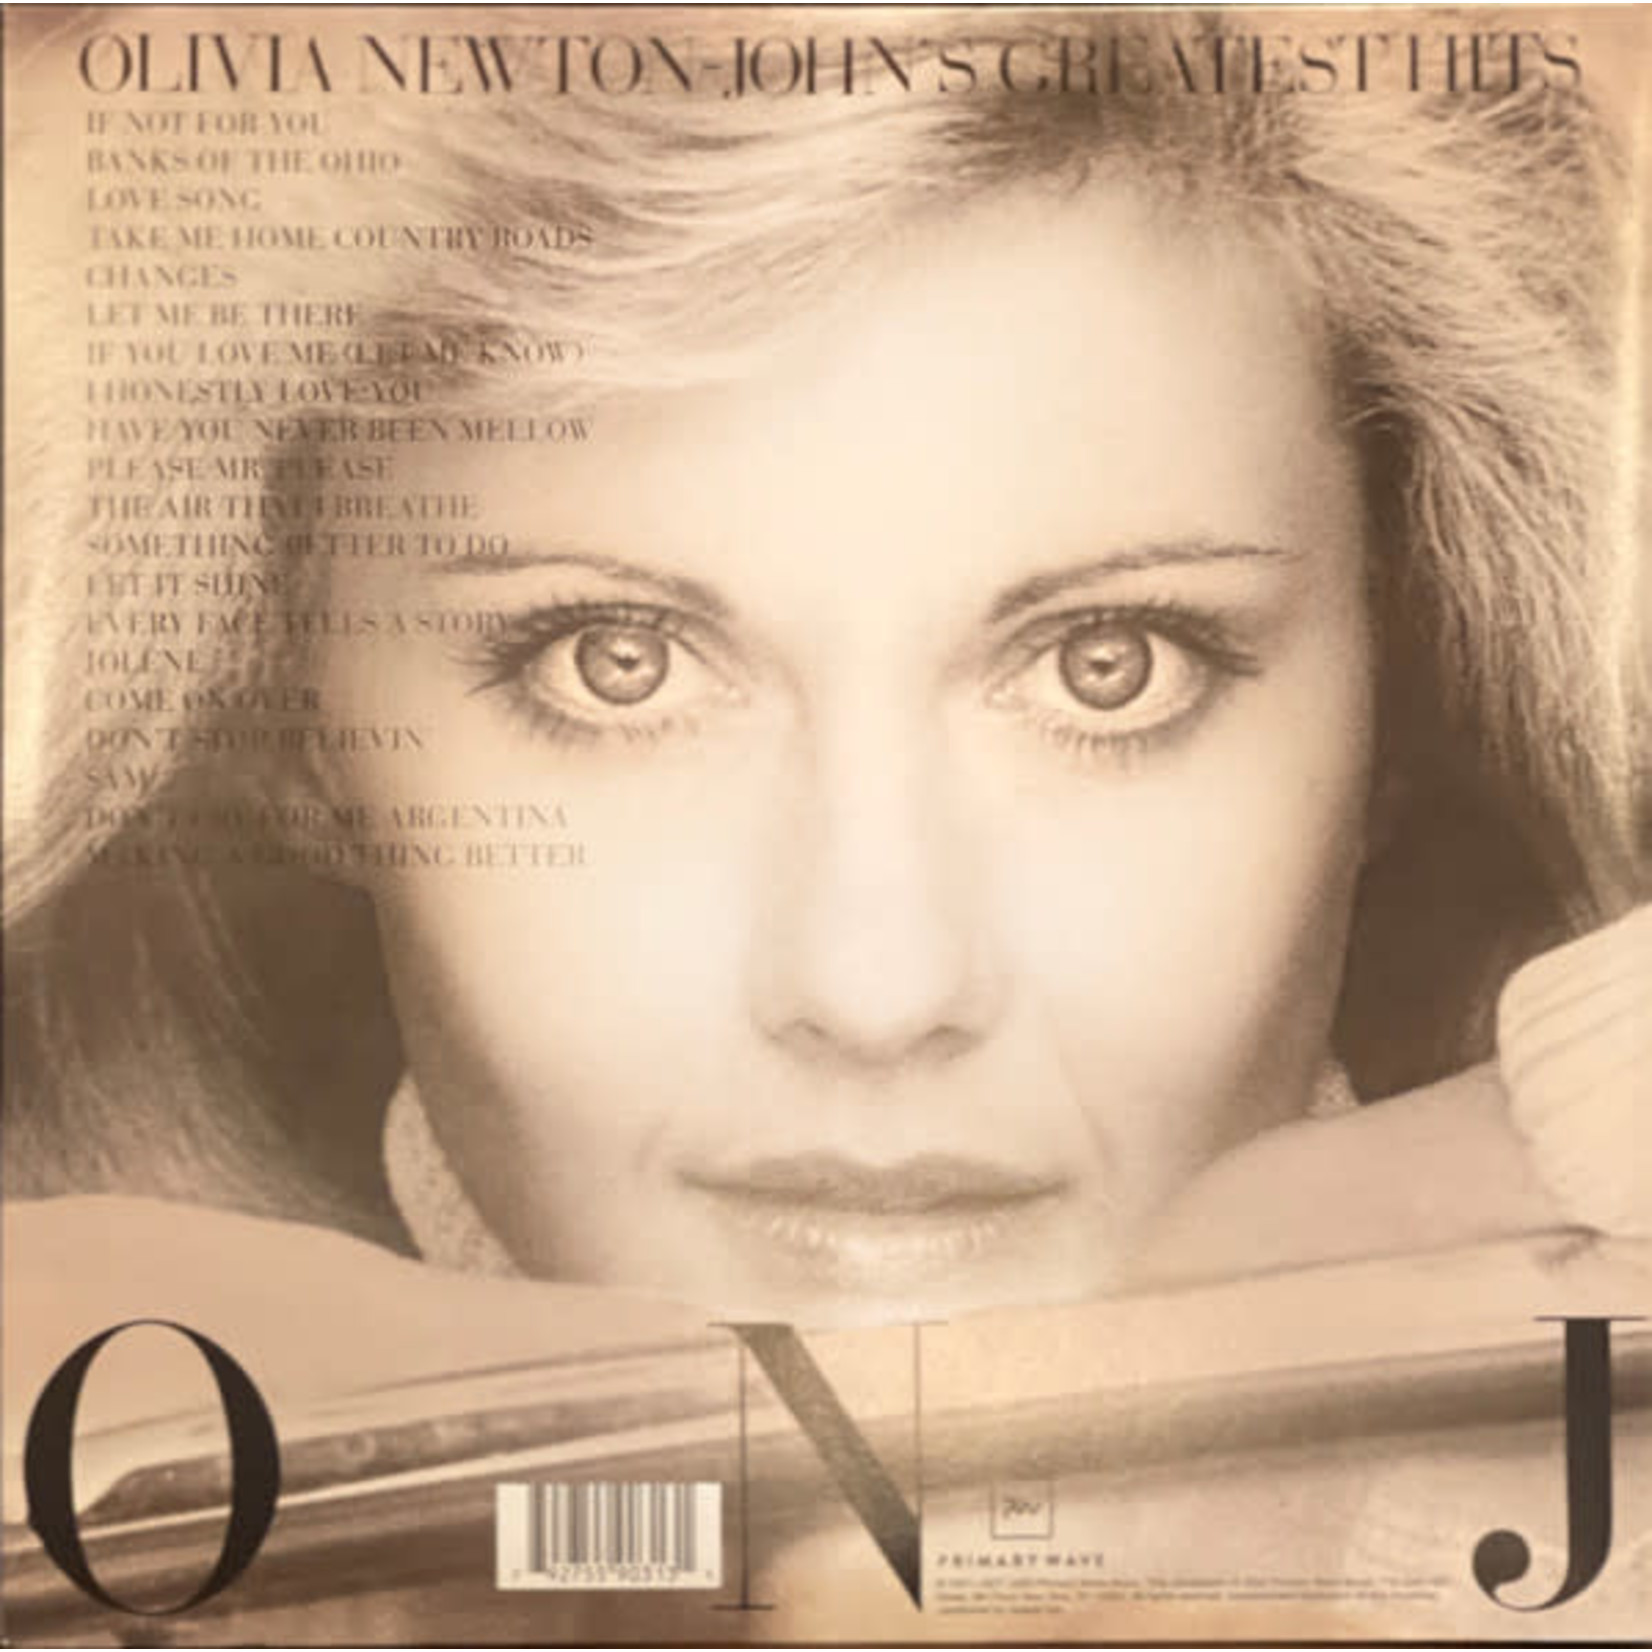 Olivia Newton-John - Olivia Newton-John's Greatest Hits (2LP)